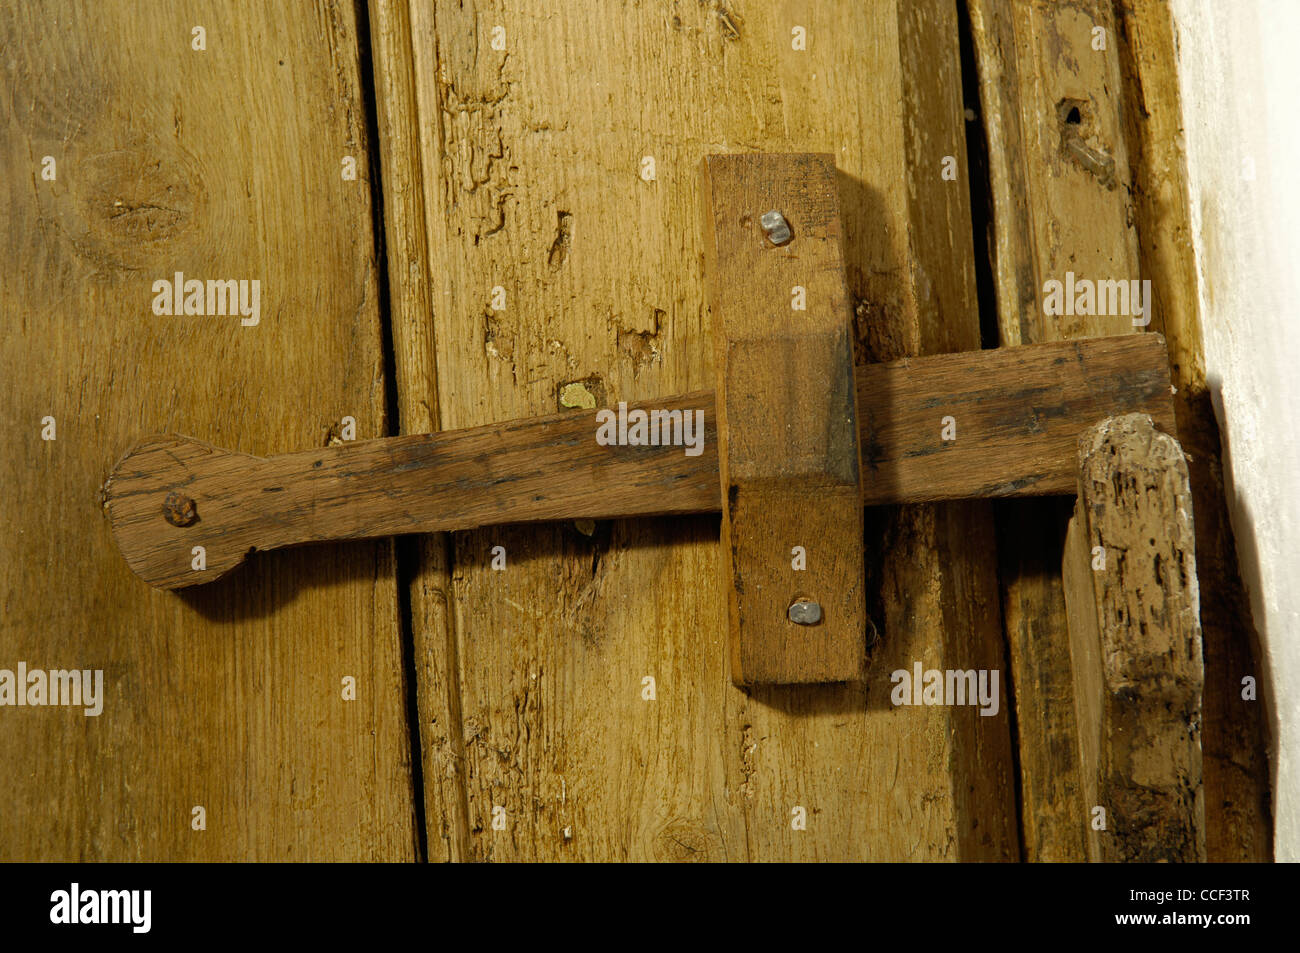 Wooden door latch Stock Photo